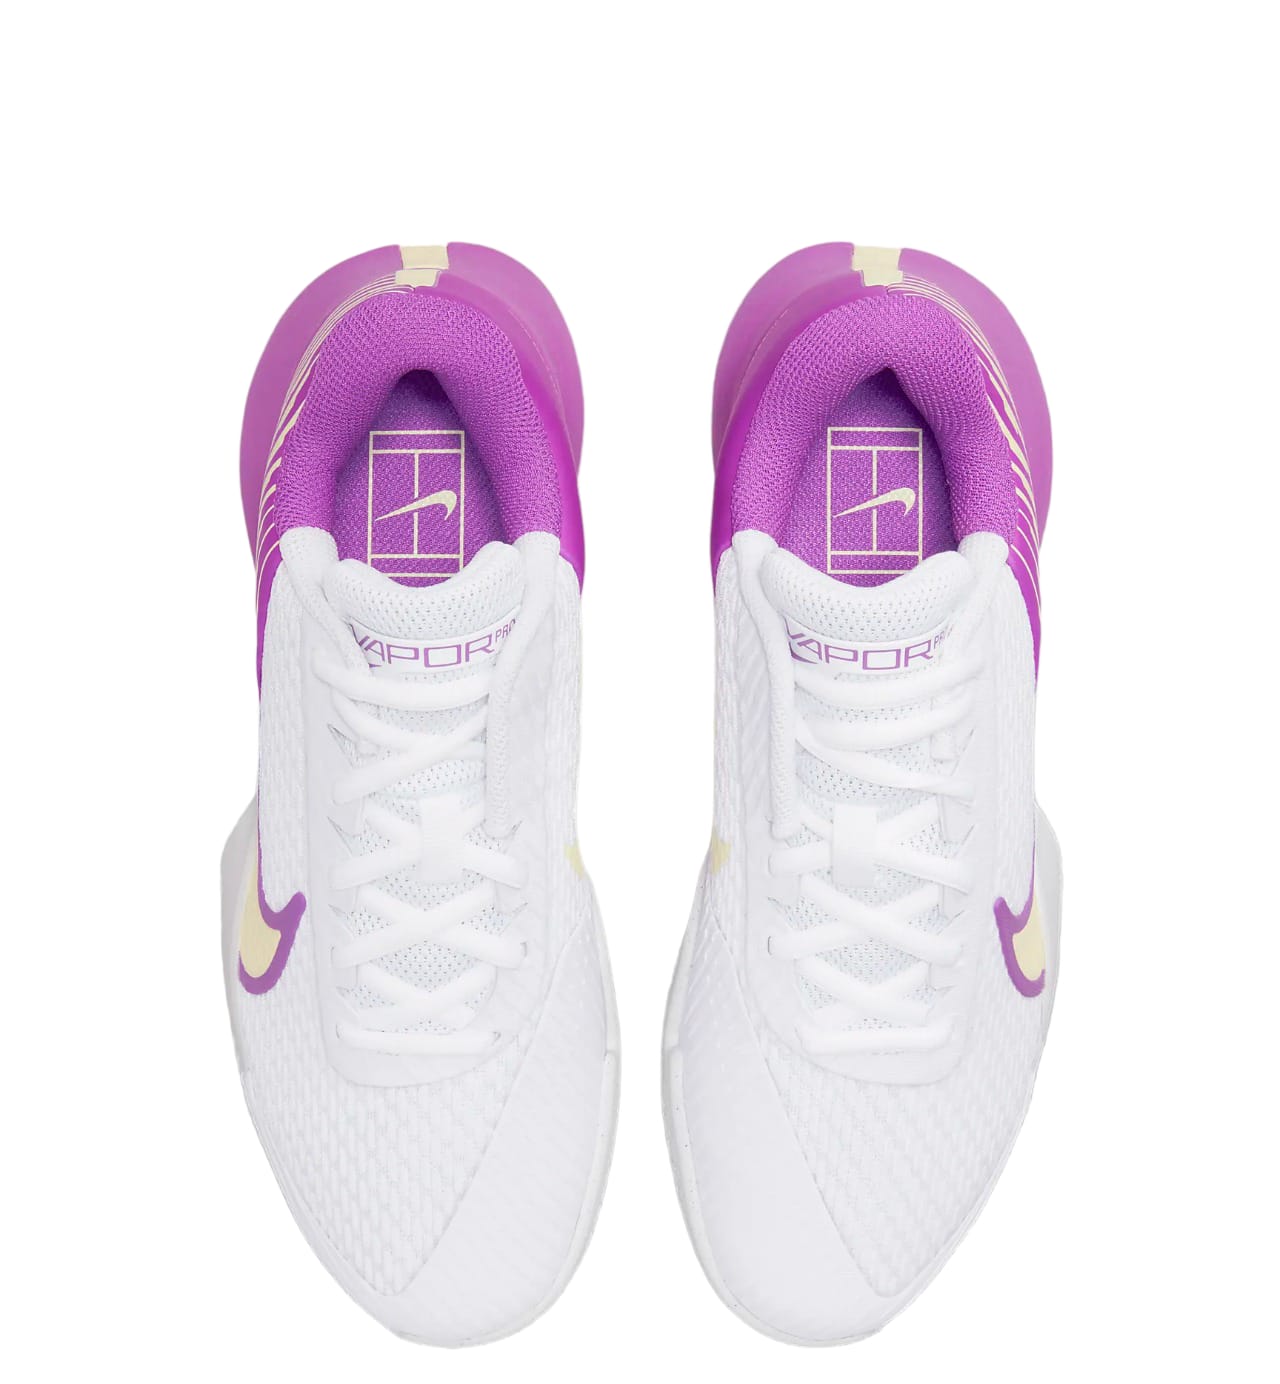 Tenis Nike Court Air Zoom Vapor Pro 2 (Blanco/Rosa Fucsia)